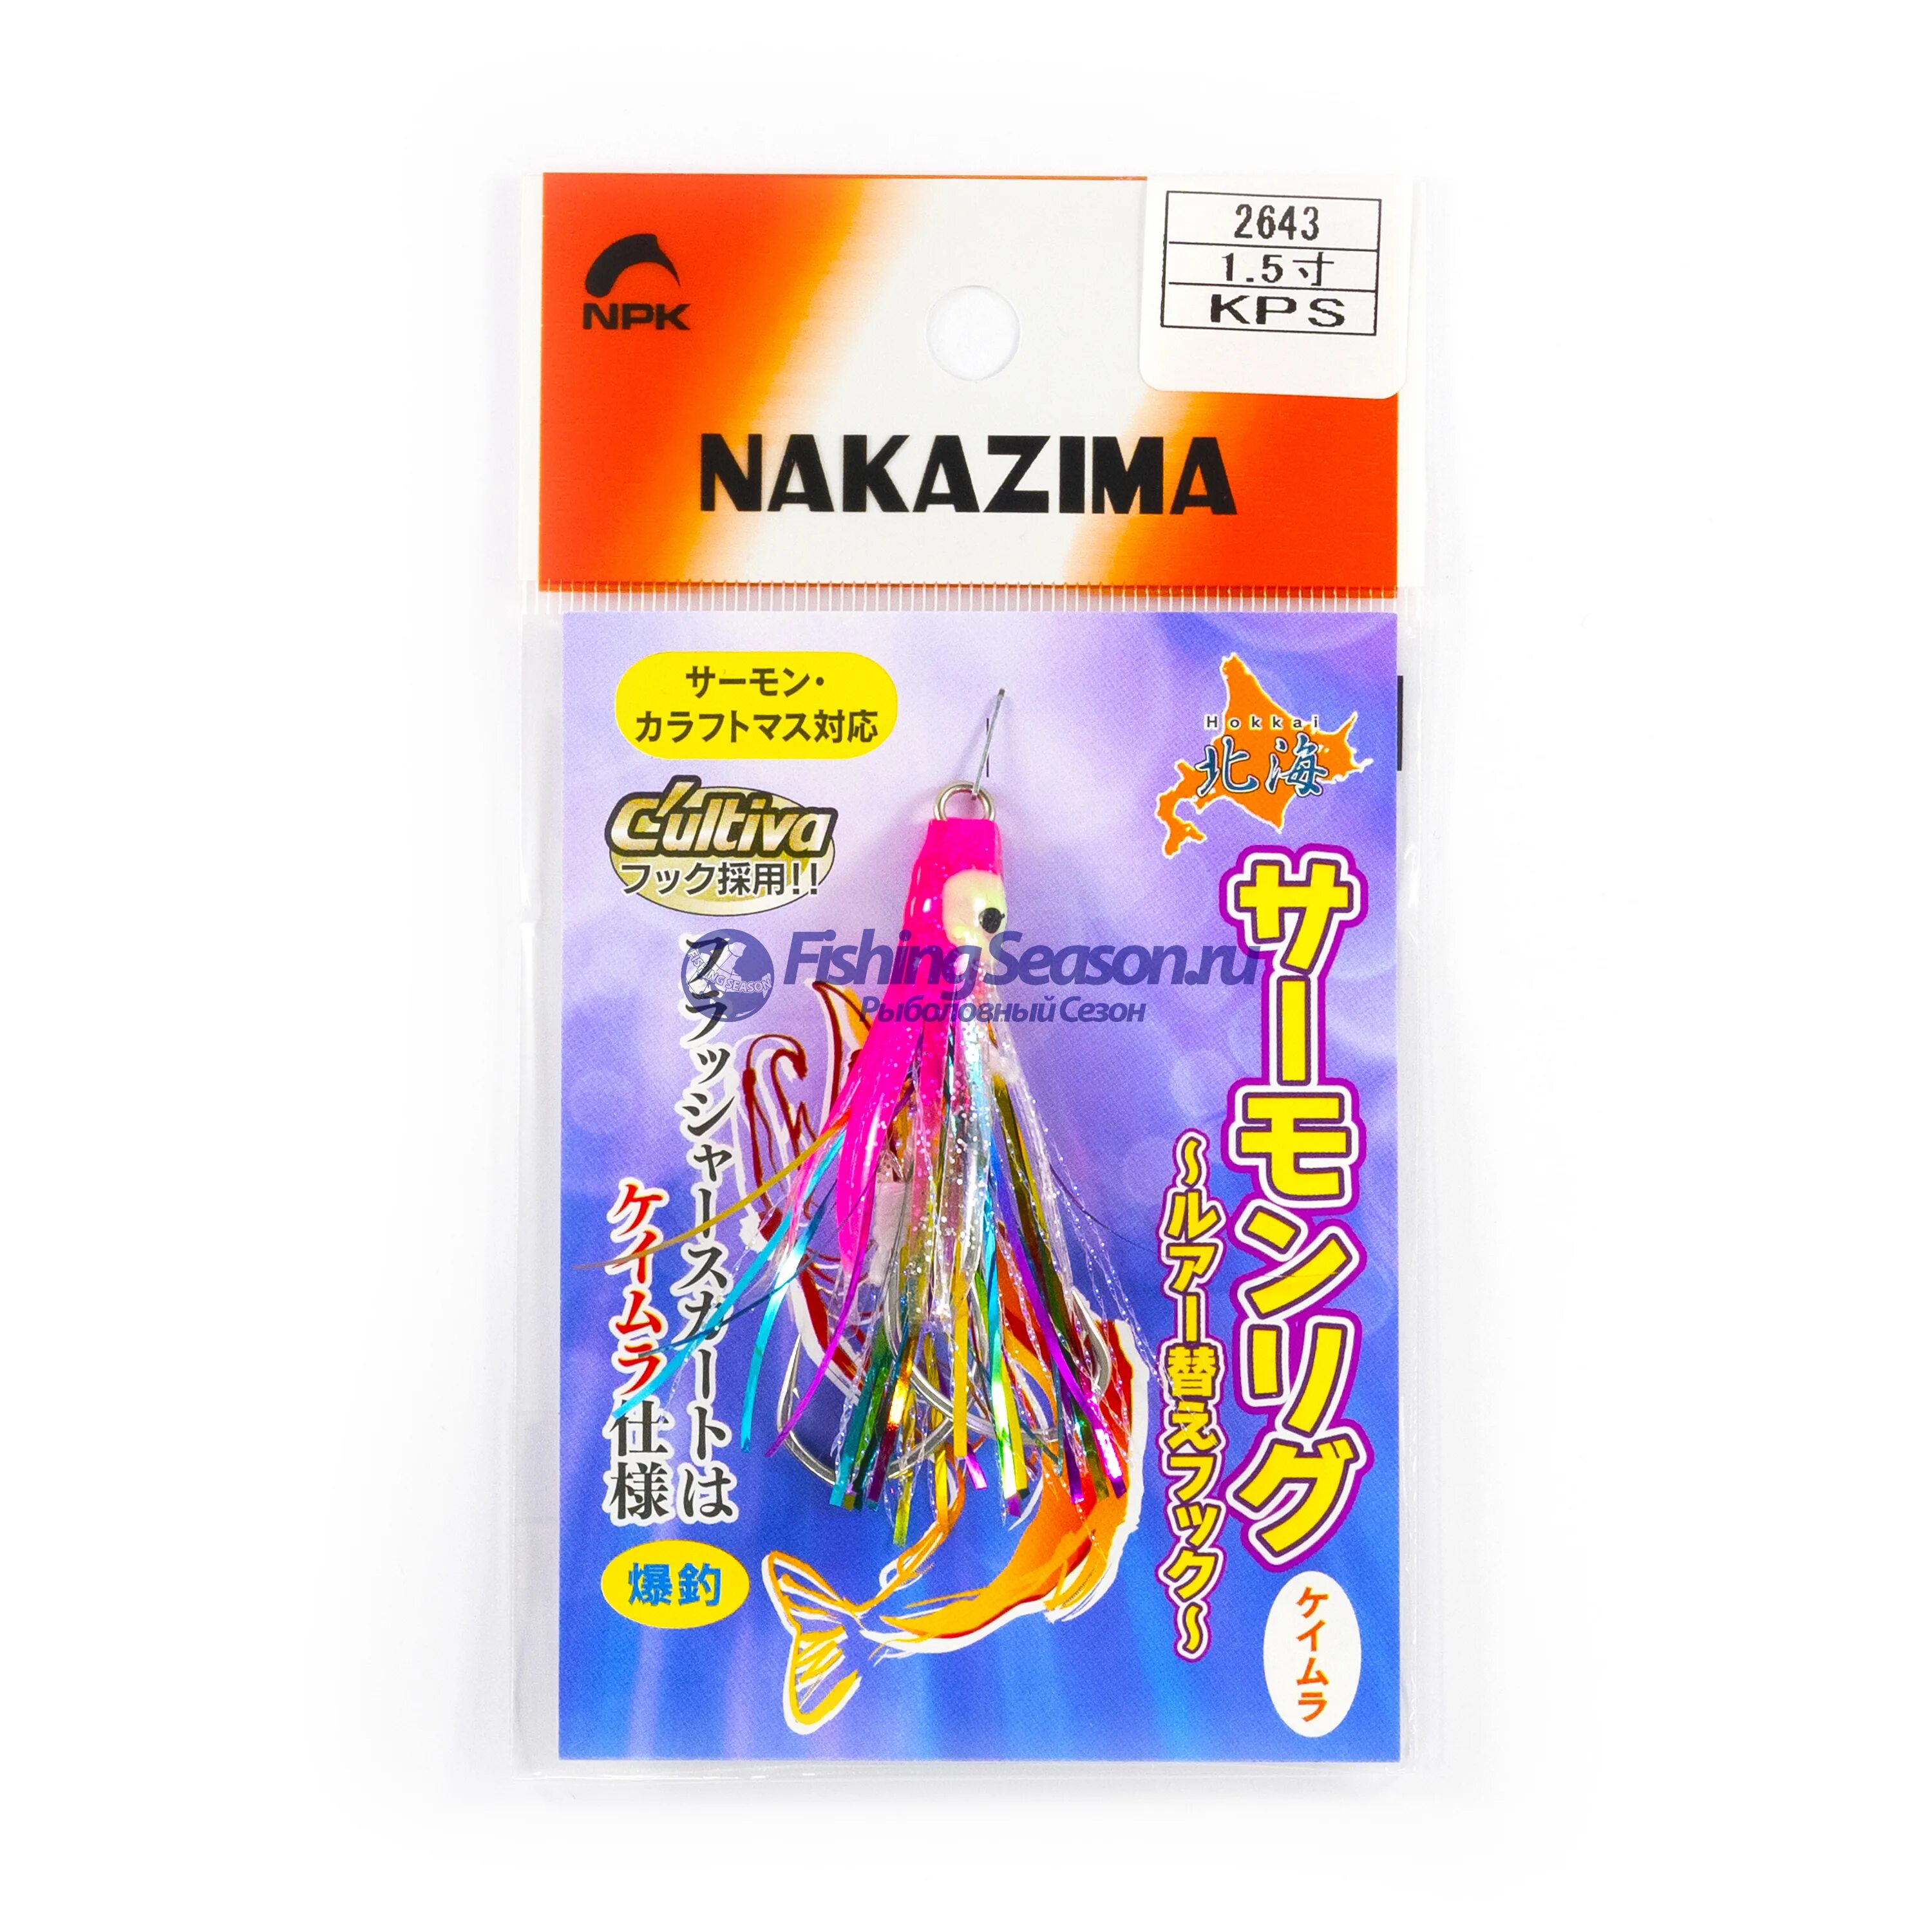 Октопусы Nakazima. Крючки ассисты на лосося. Лосось на крючке. Октопус на кету. Снасть на минтая